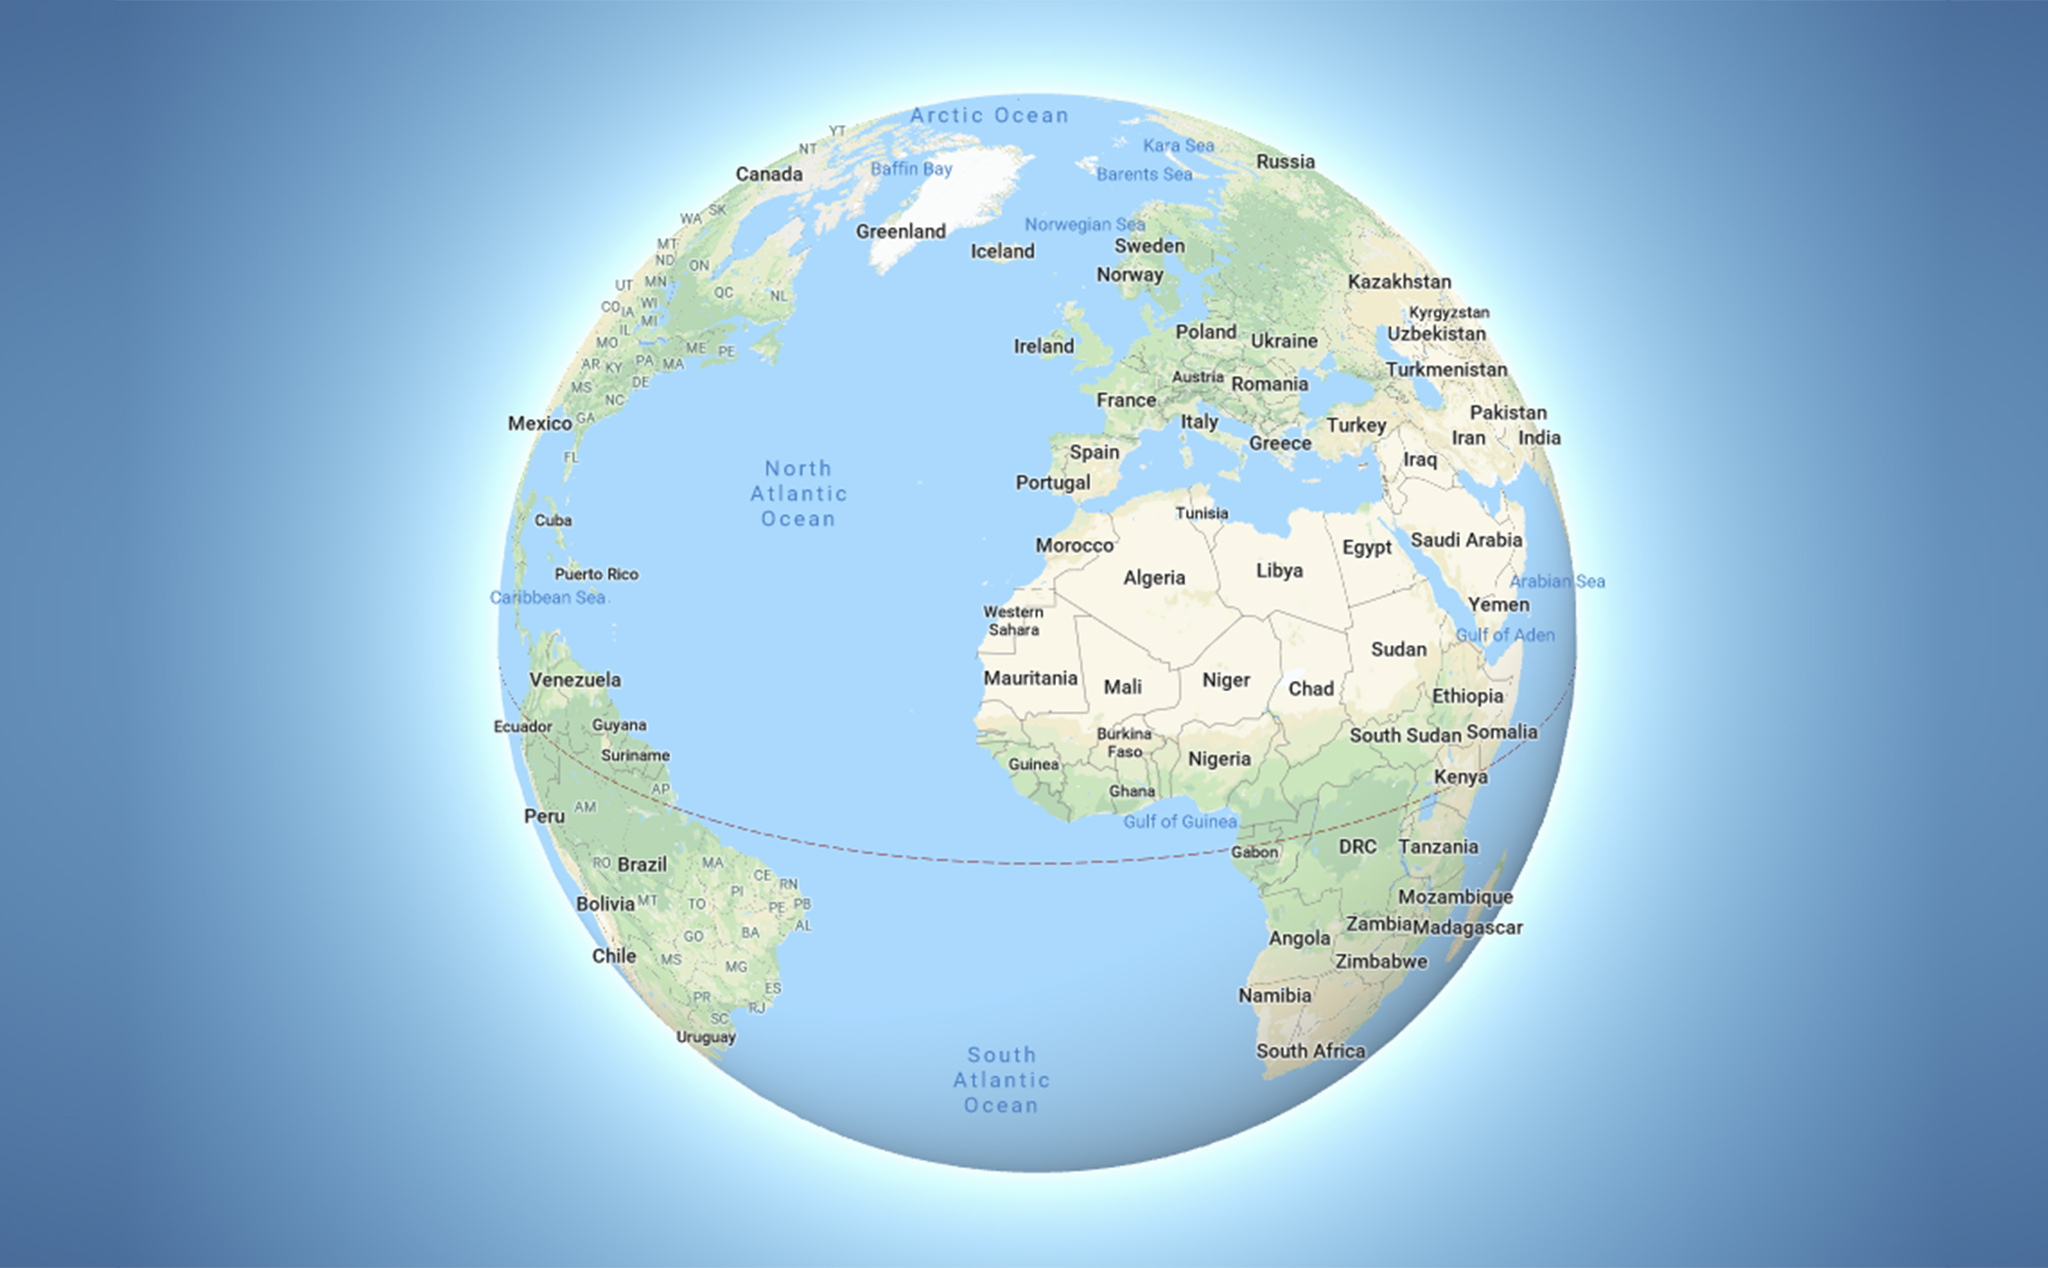 Khám phá thế giới với bản đồ 3D trái đất trên desktop. Với công nghệ mới nhất, bạn có thể bấm vào các điểm đánh dấu trên bản đồ để tìm hiểu thêm thông tin về địa điểm đó. Khám phá trái đất ngay trên màn hình của bạn và khám phá những vùng đất mới mẻ.